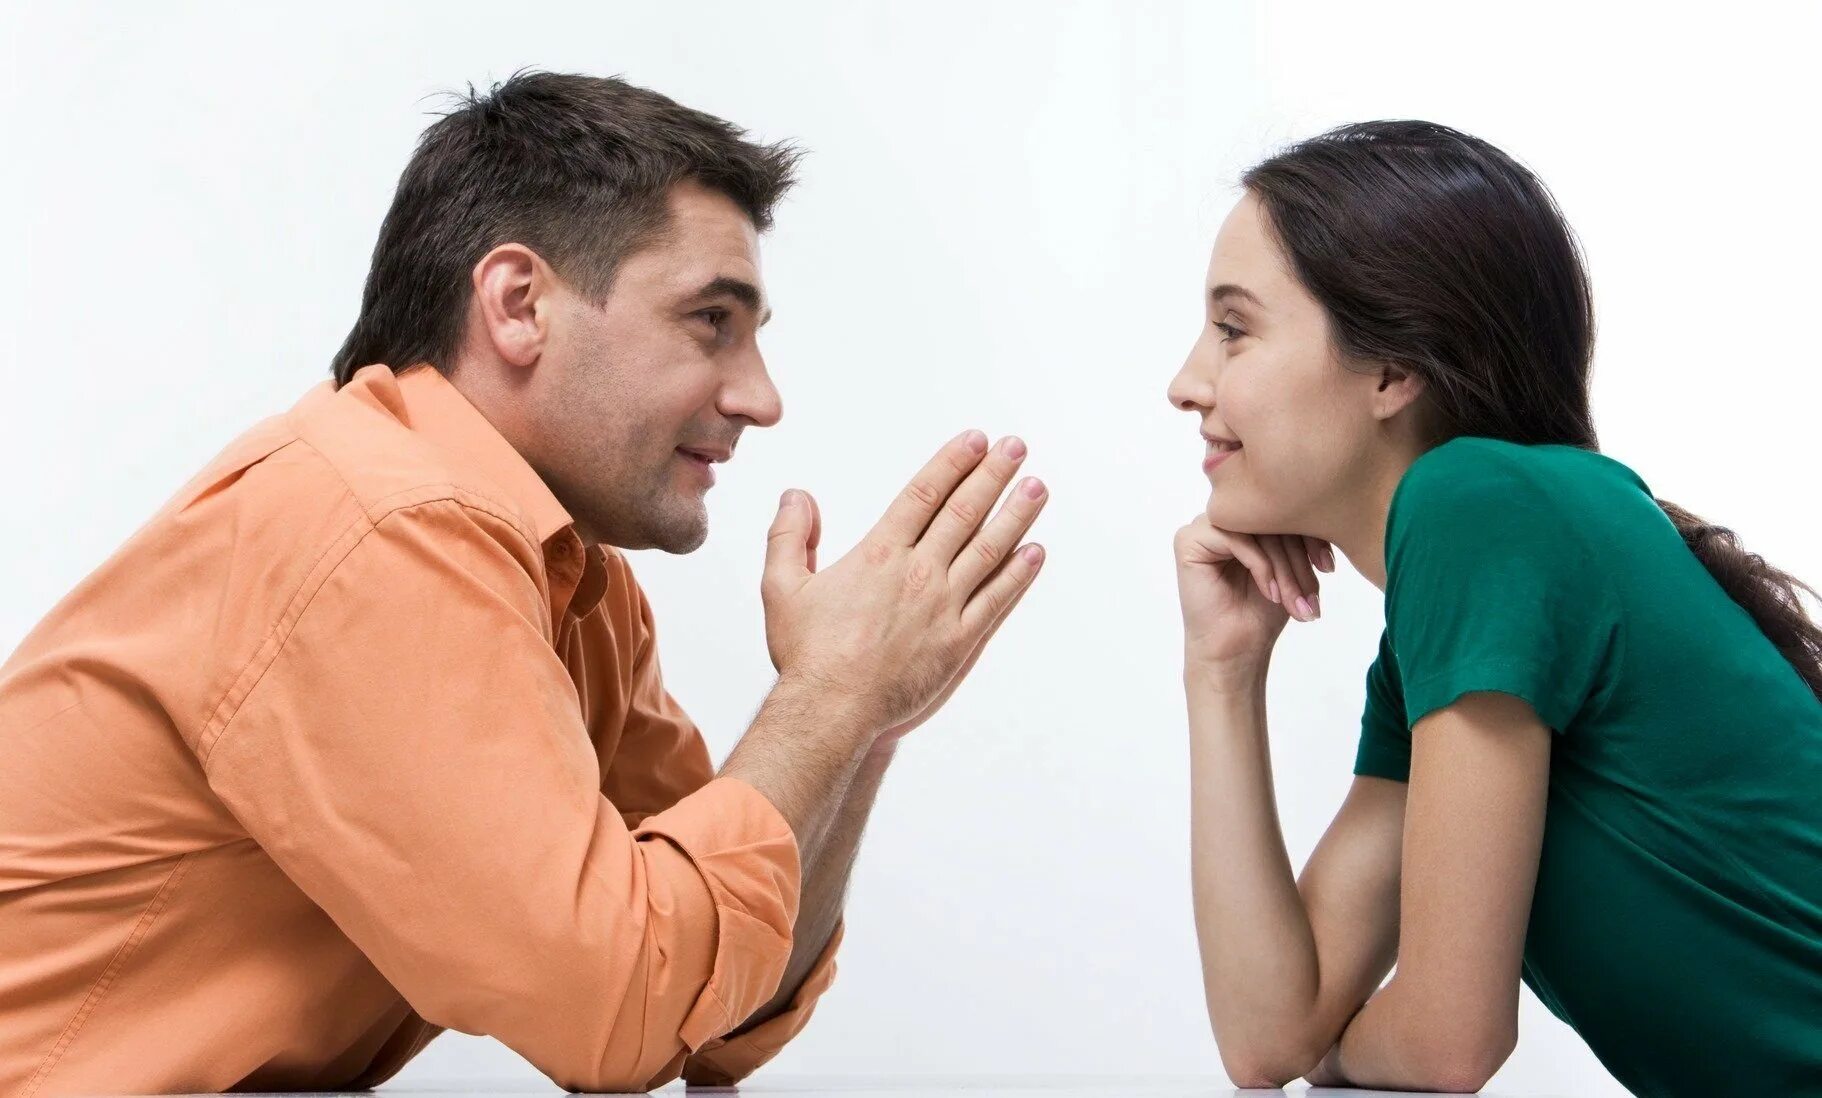 Разговор между мужчиной и женщиной. Общение людей. Взаимопонимание в общении. Беседа мужчины и женщины. Почему так важно быть человеком